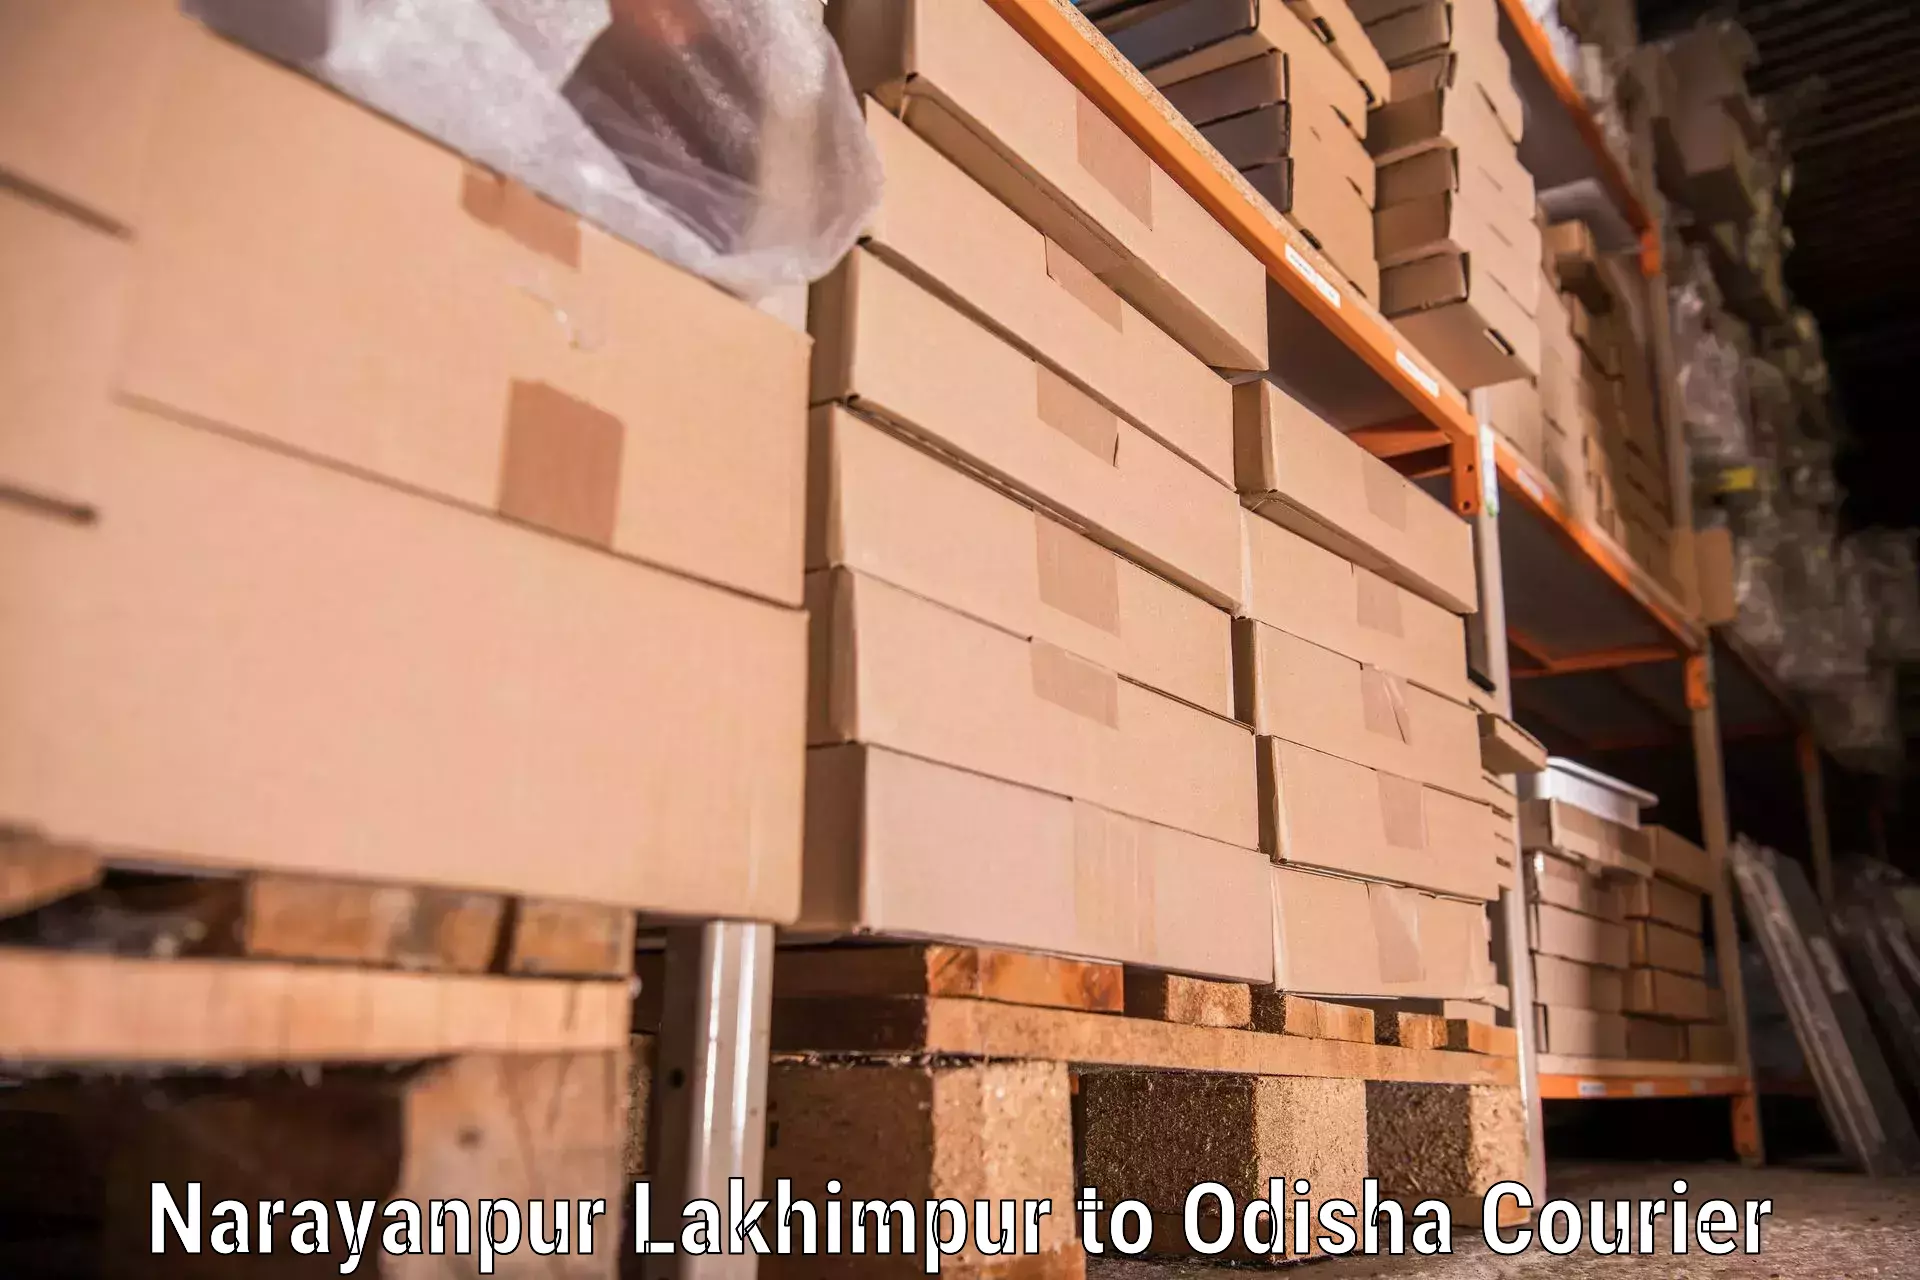 Efficient moving company Narayanpur Lakhimpur to Karanjia